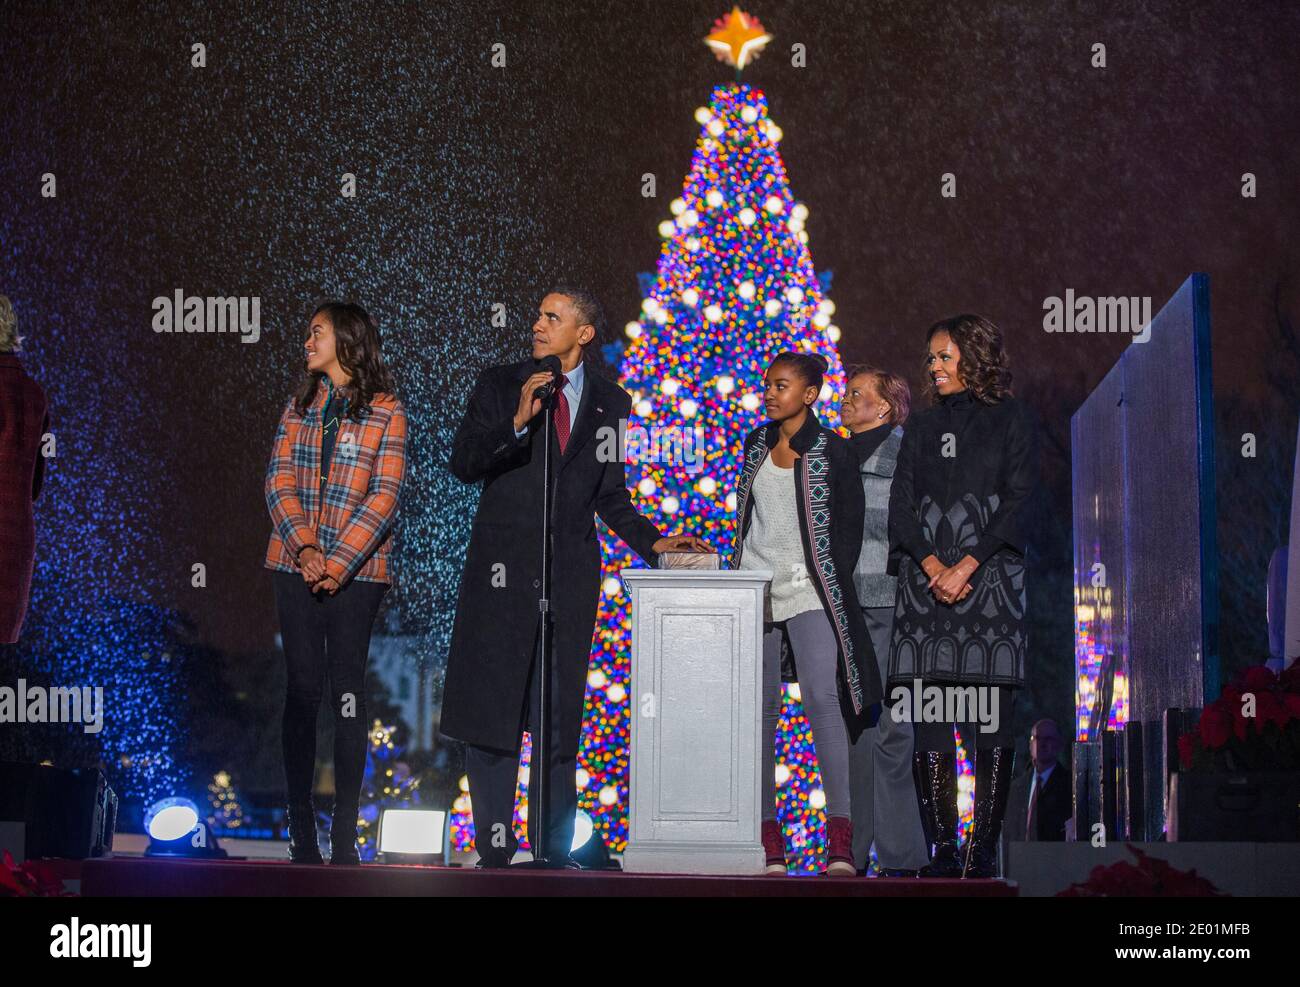 Il presidente DEGLI STATI UNITI Barack Obama (C-L) illumina l'albero di Natale nazionale con le sue figlie Malia (L) e Sasha (C), la suocera Marian Robinson (C-R) e la moglie Michelle Obama (R) durante la 91esima cerimonia nazionale di illuminazione dell'albero di Natale sull'Ellipse a sud della Casa Bianca a Washington, DC, USA, 06 dicembre 2013. L'illuminazione dell'albero è una tradizione annuale alla quale partecipano il Presidente degli Stati Uniti e la prima Famiglia. Il presidente Calvin Coolidge ha acceso il primo albero di Natale nazionale, un abete balsamo di 48 piedi, nel 1923. Foto di Jim lo Scalzo/piscina/ABACAPRESS.COM Foto Stock